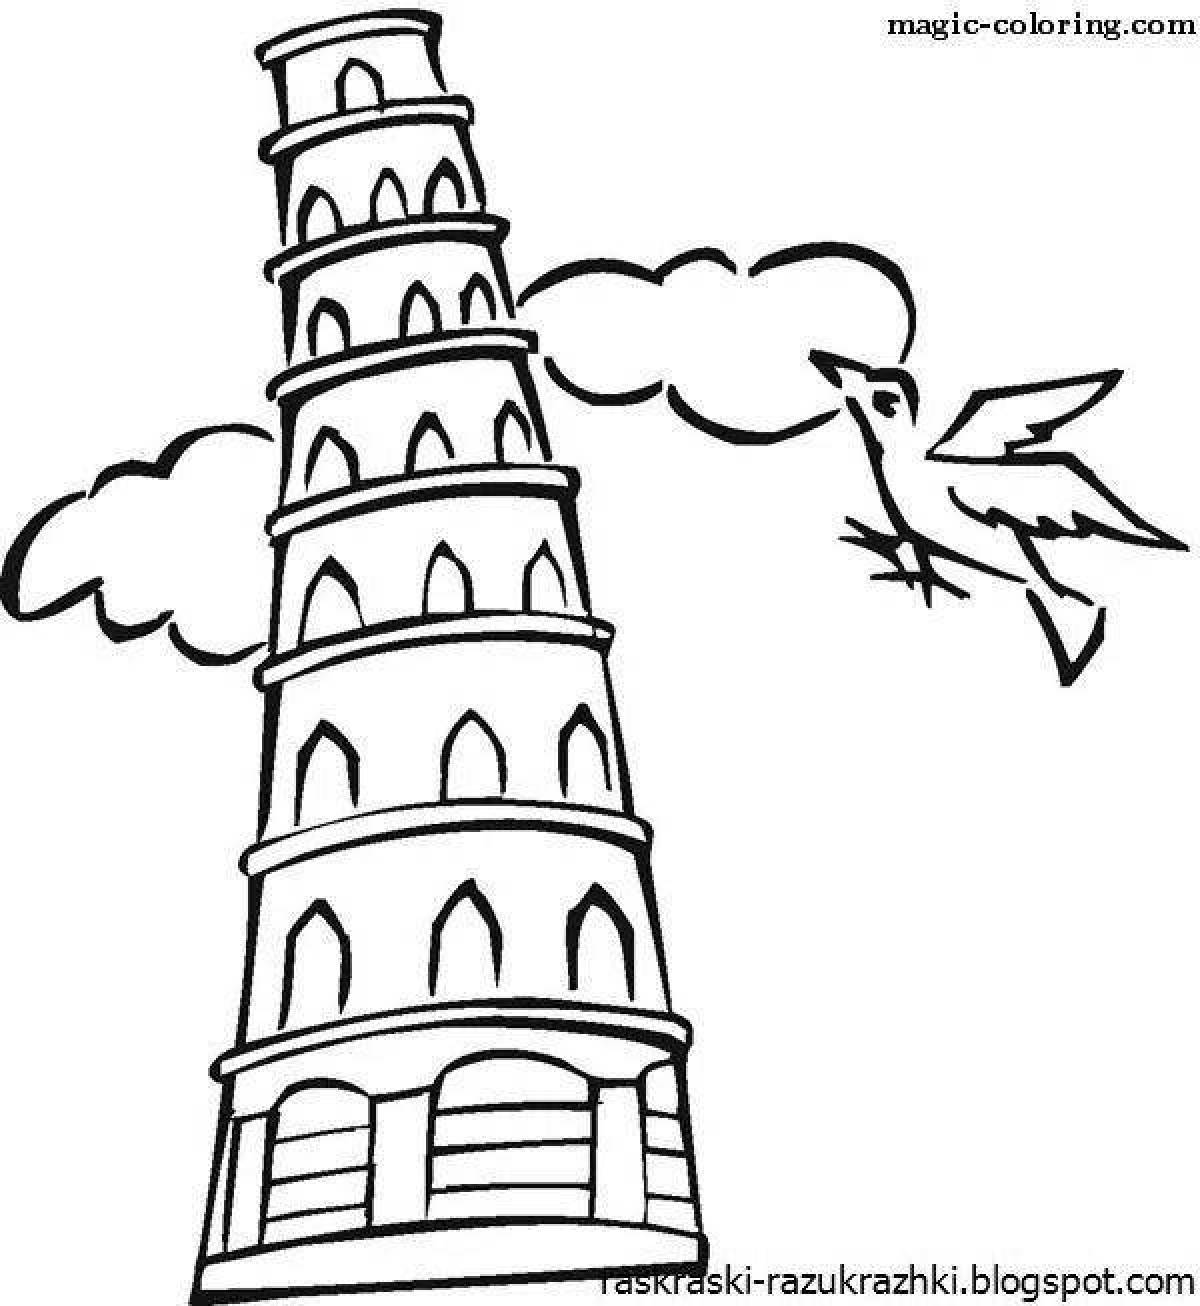 Ослепительная раскраска пизанской башни